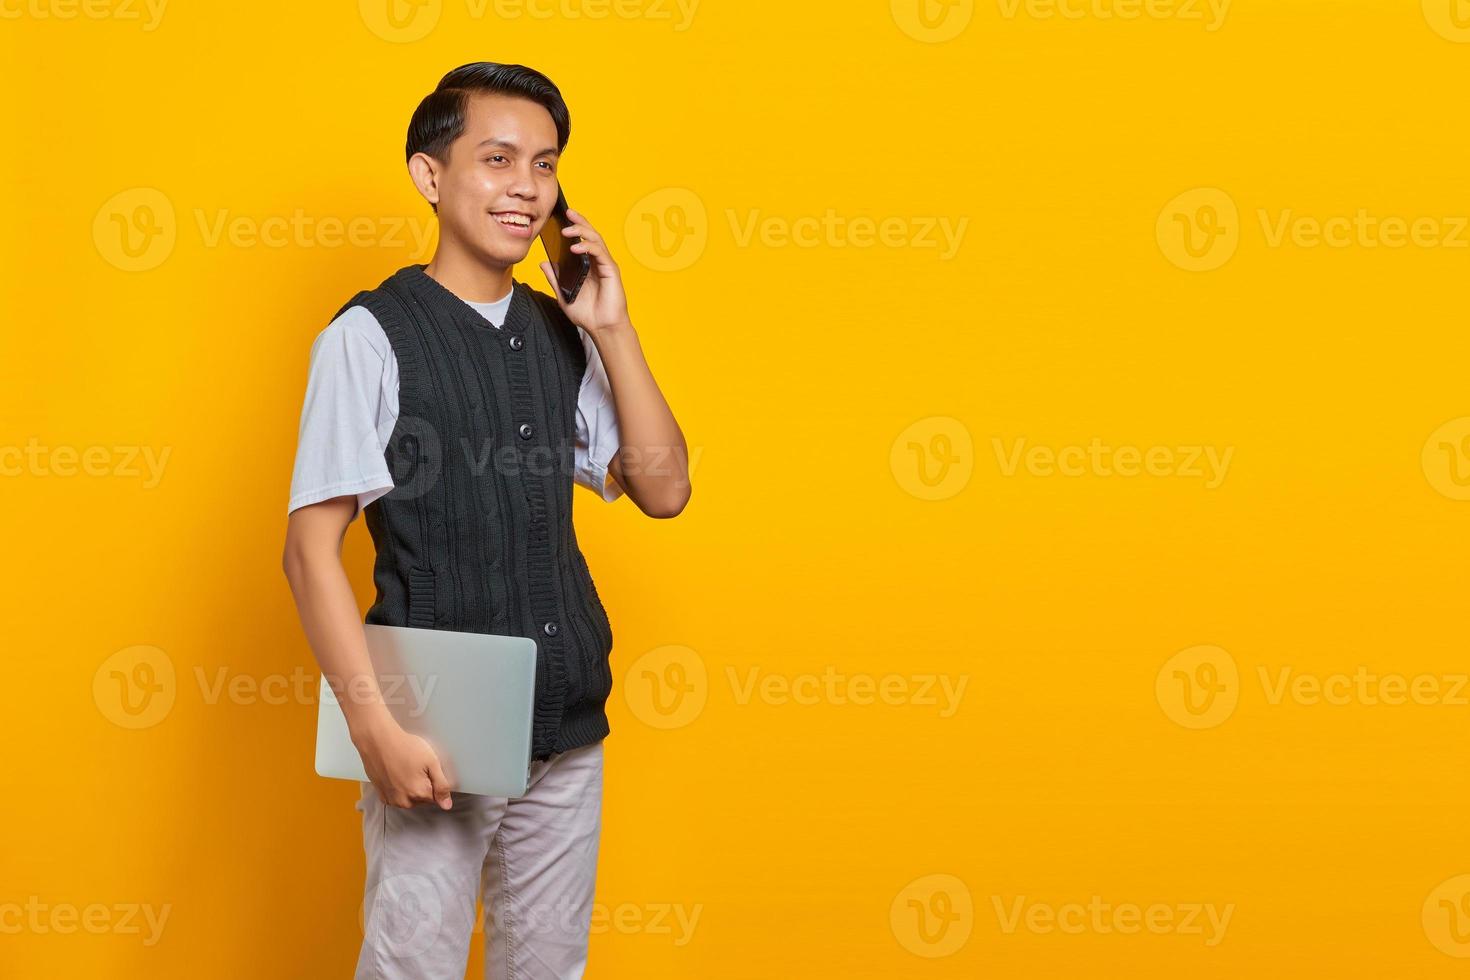 jovem empresário bonito falando em um smartphone e segurando um laptop sobre fundo amarelo foto